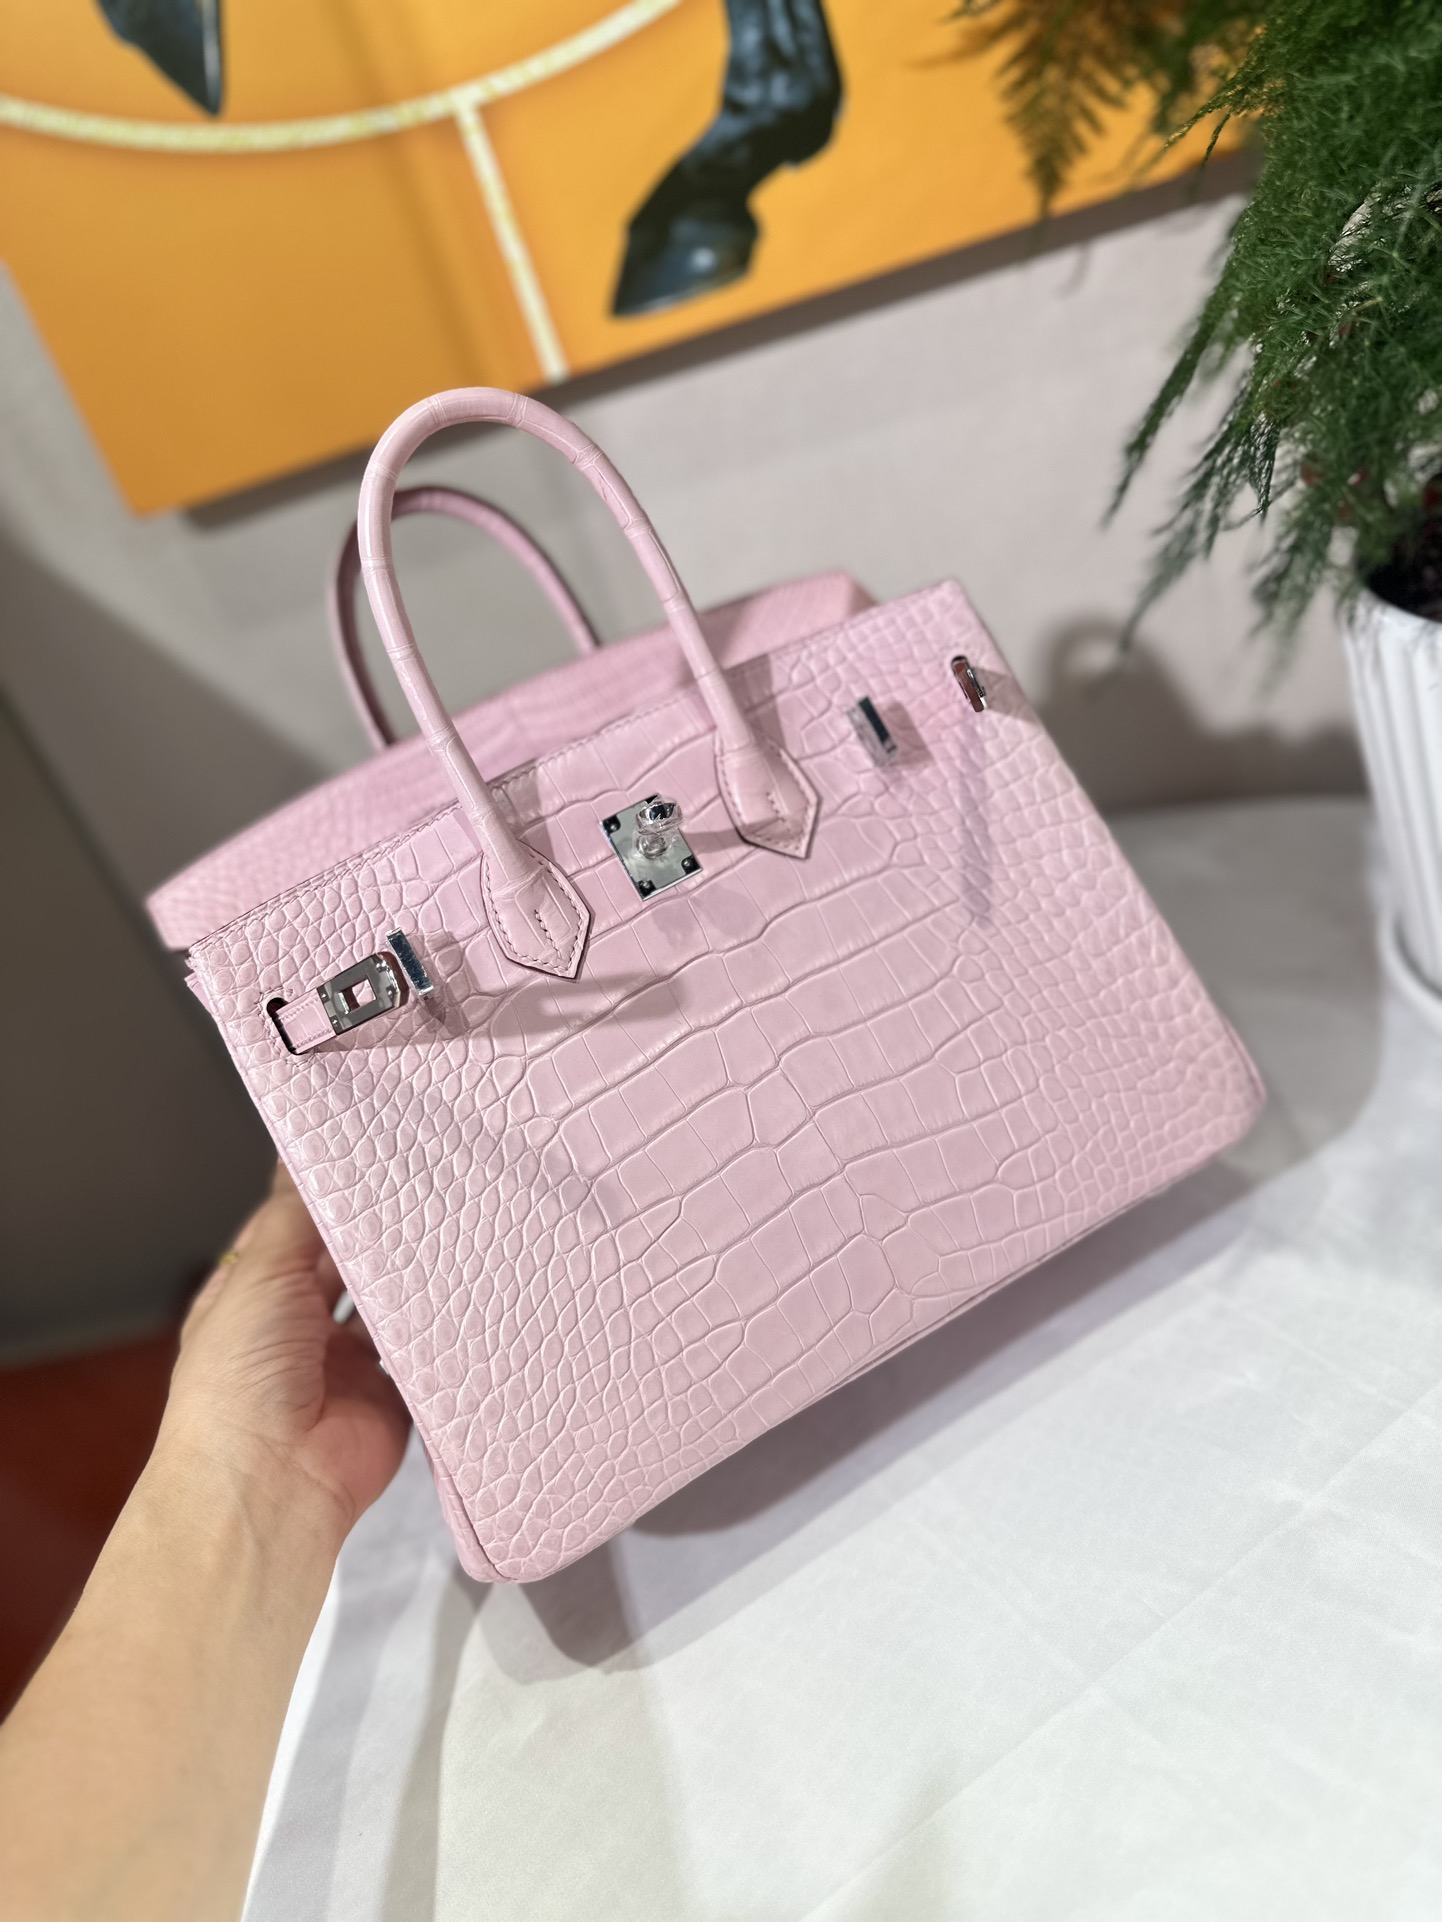 Hermes Birkin Bags Handbags Pink